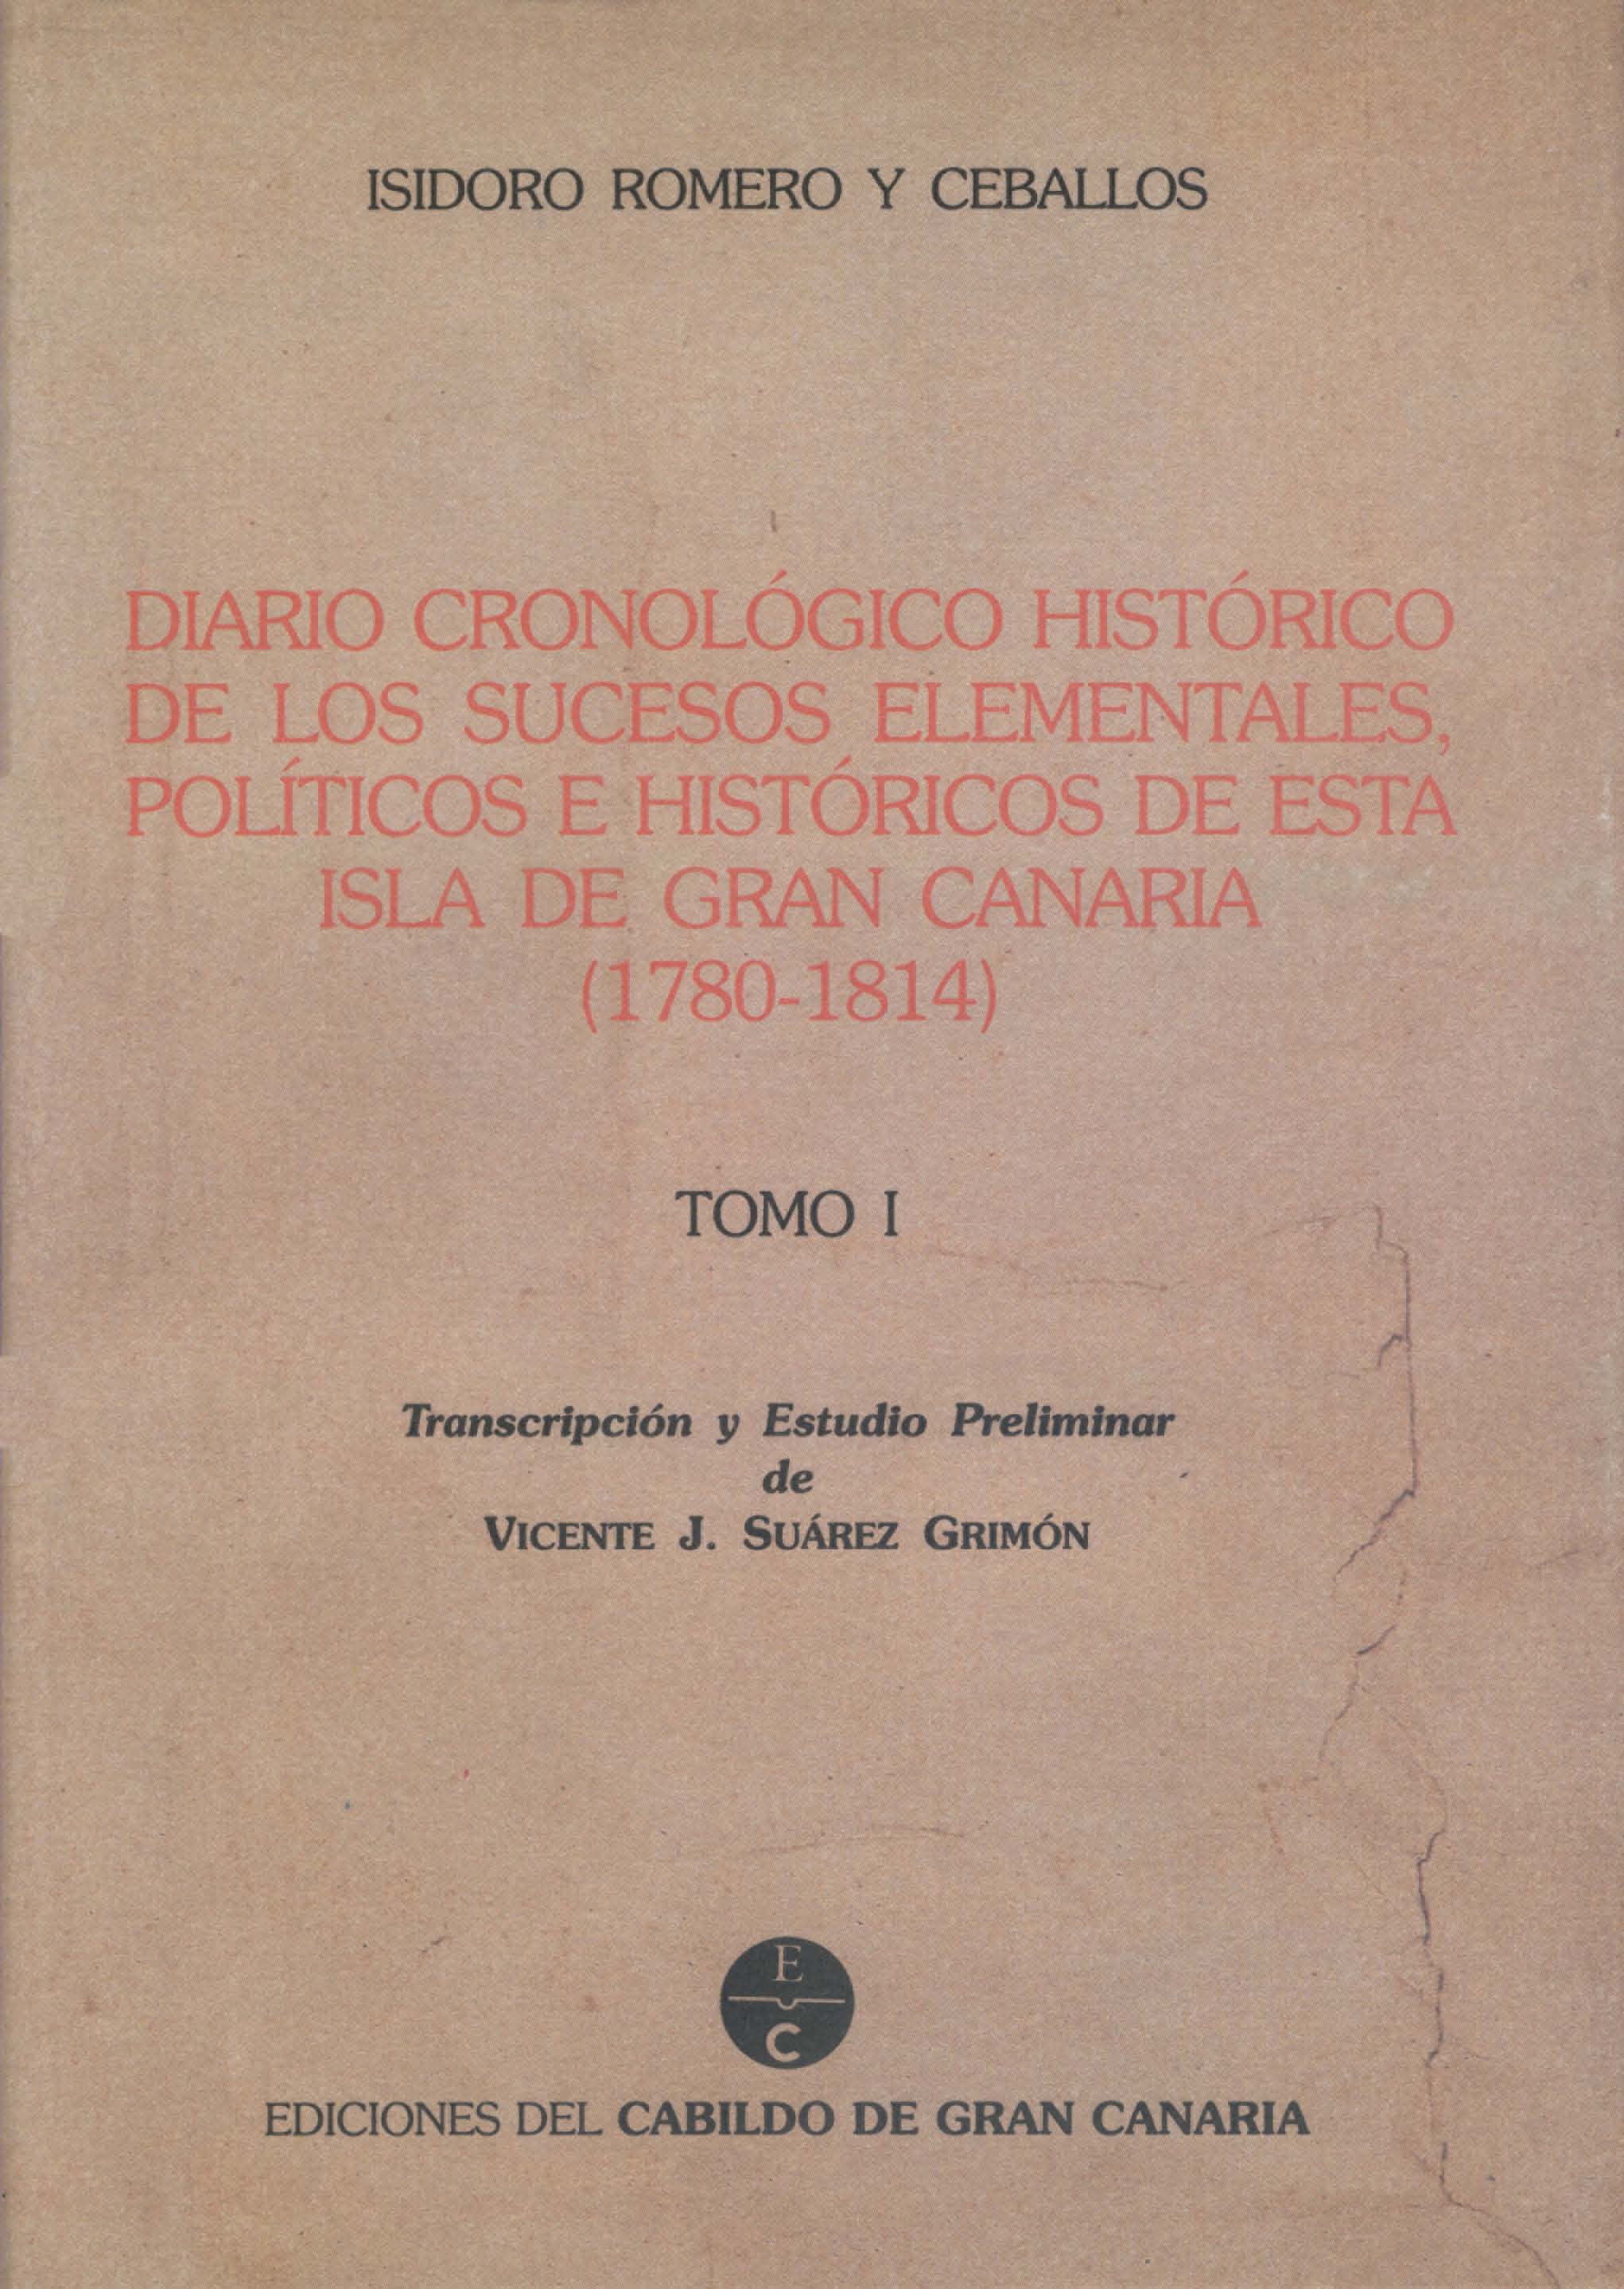 Diario cronológico histórico de los sucesos elementales, políticos e históricos de esta isla de Gran Canaria